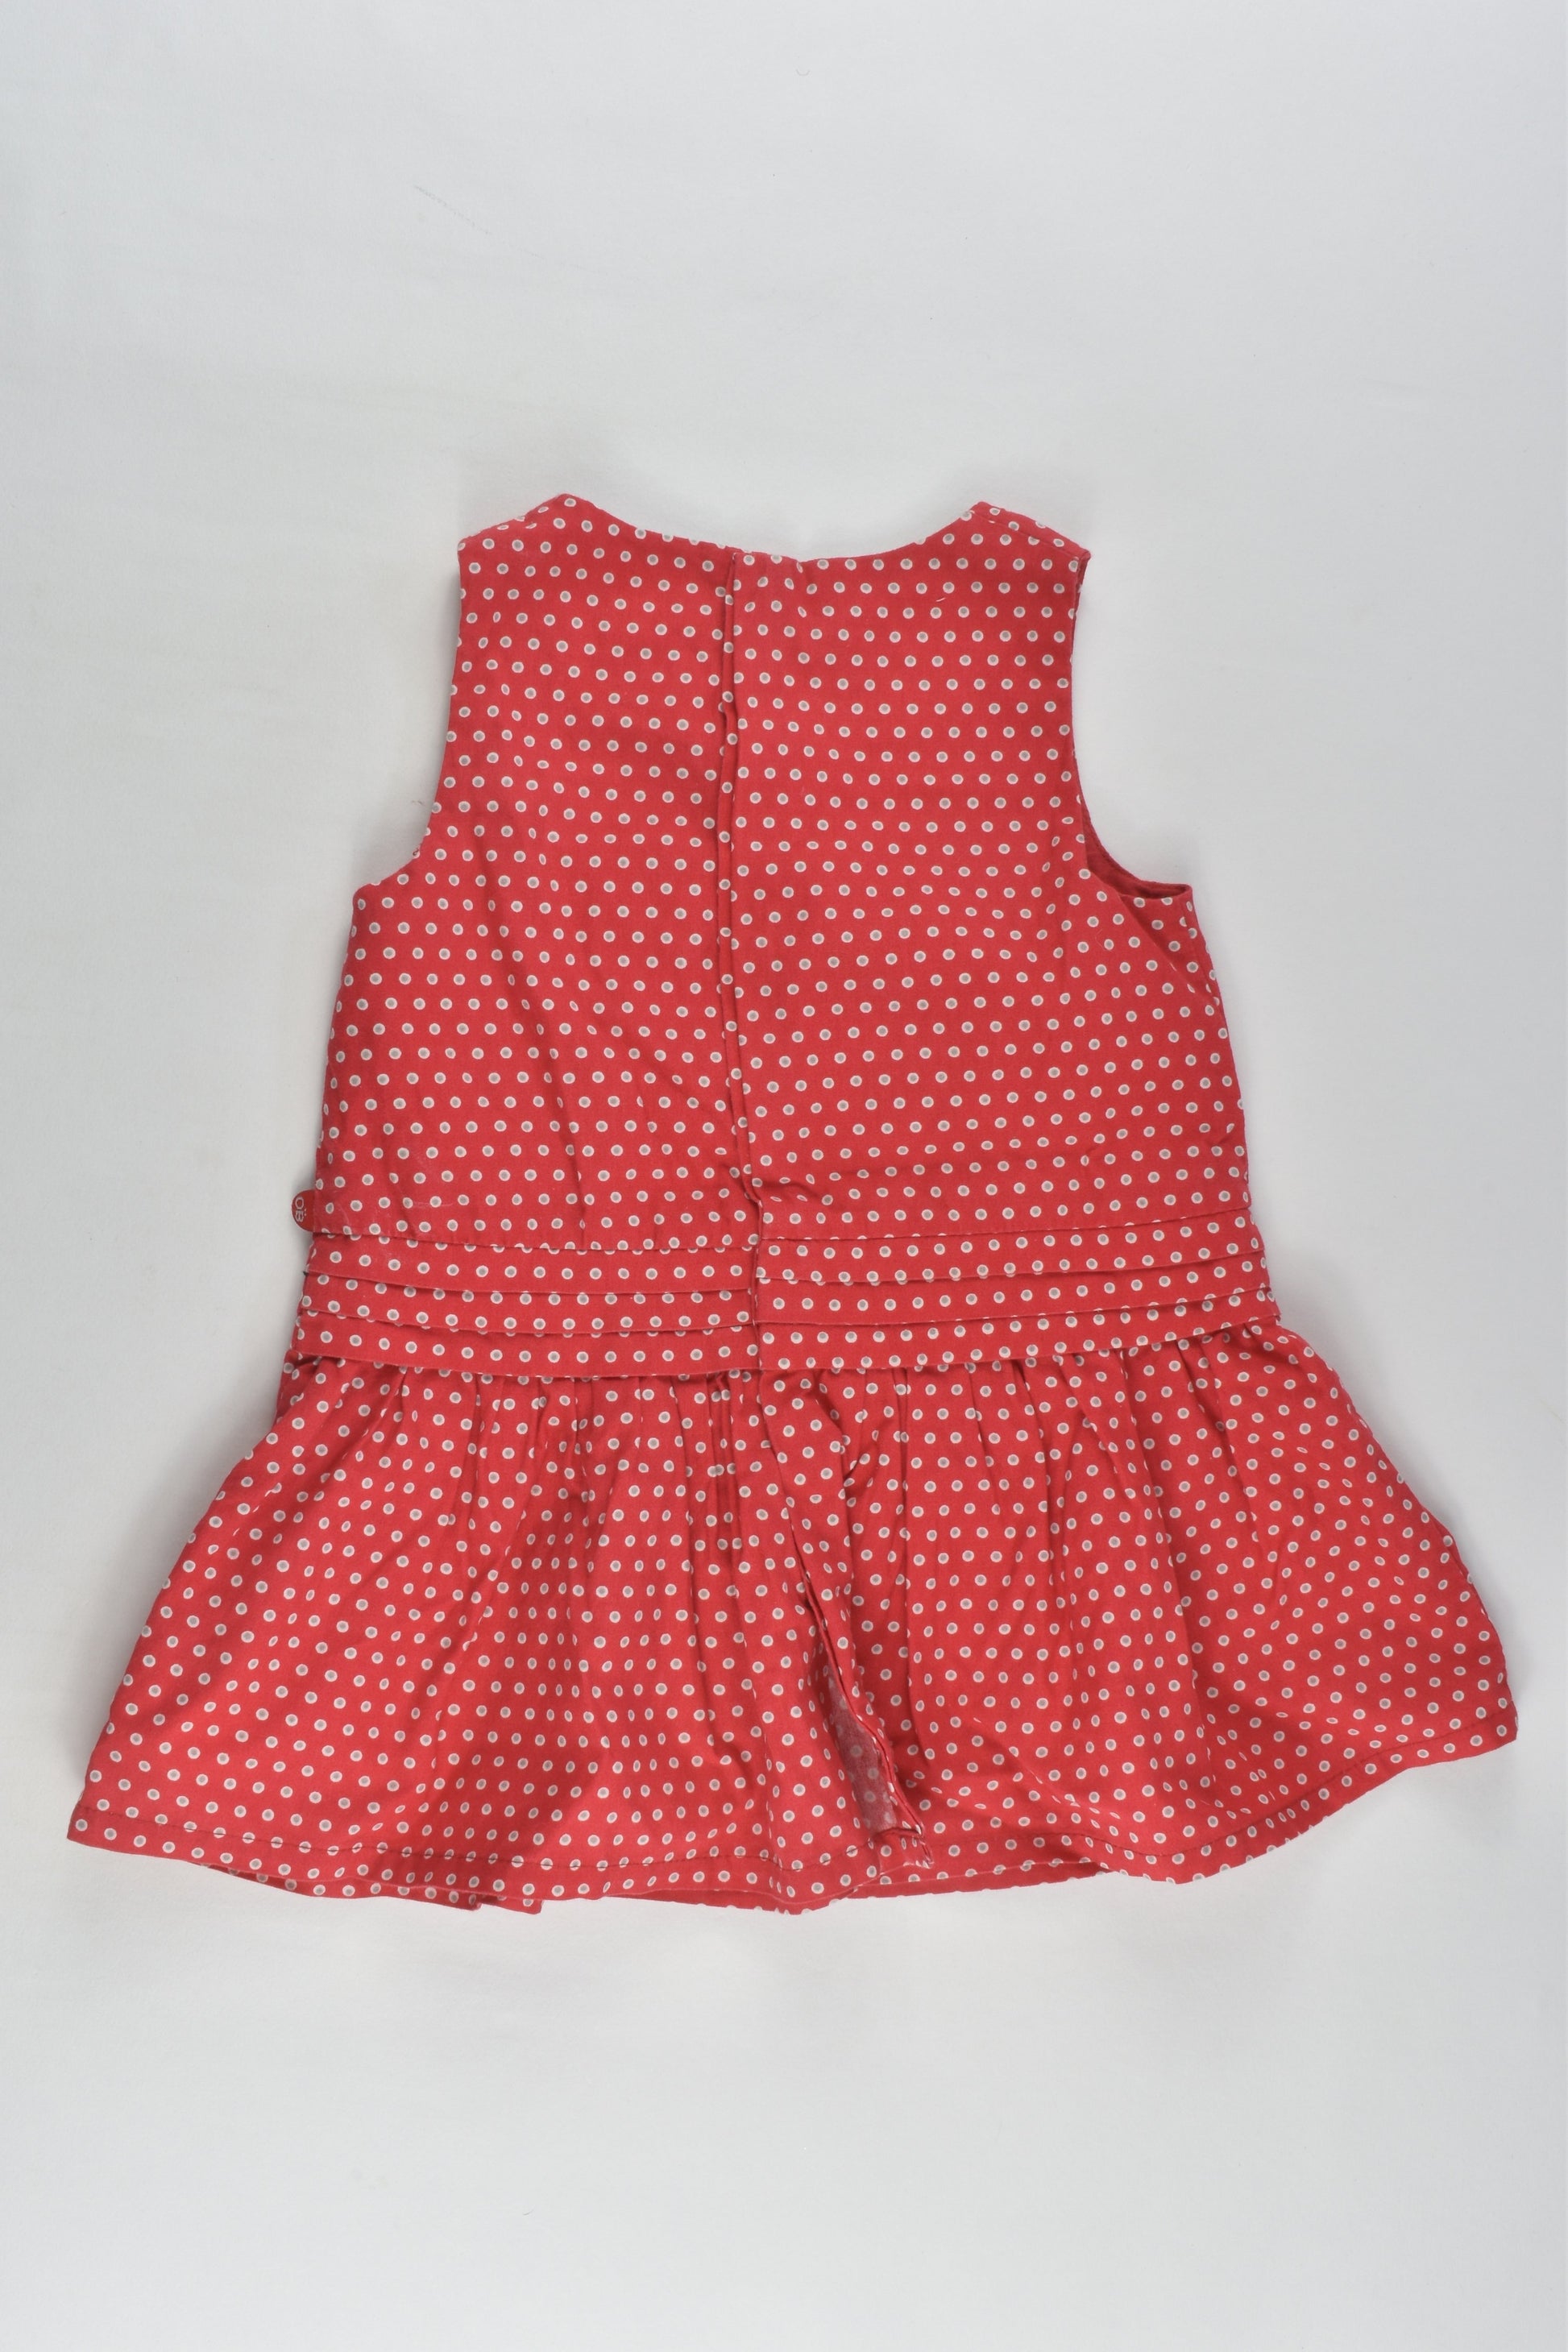 Obaïbi Size 00 (6M, 68 cm) Dress